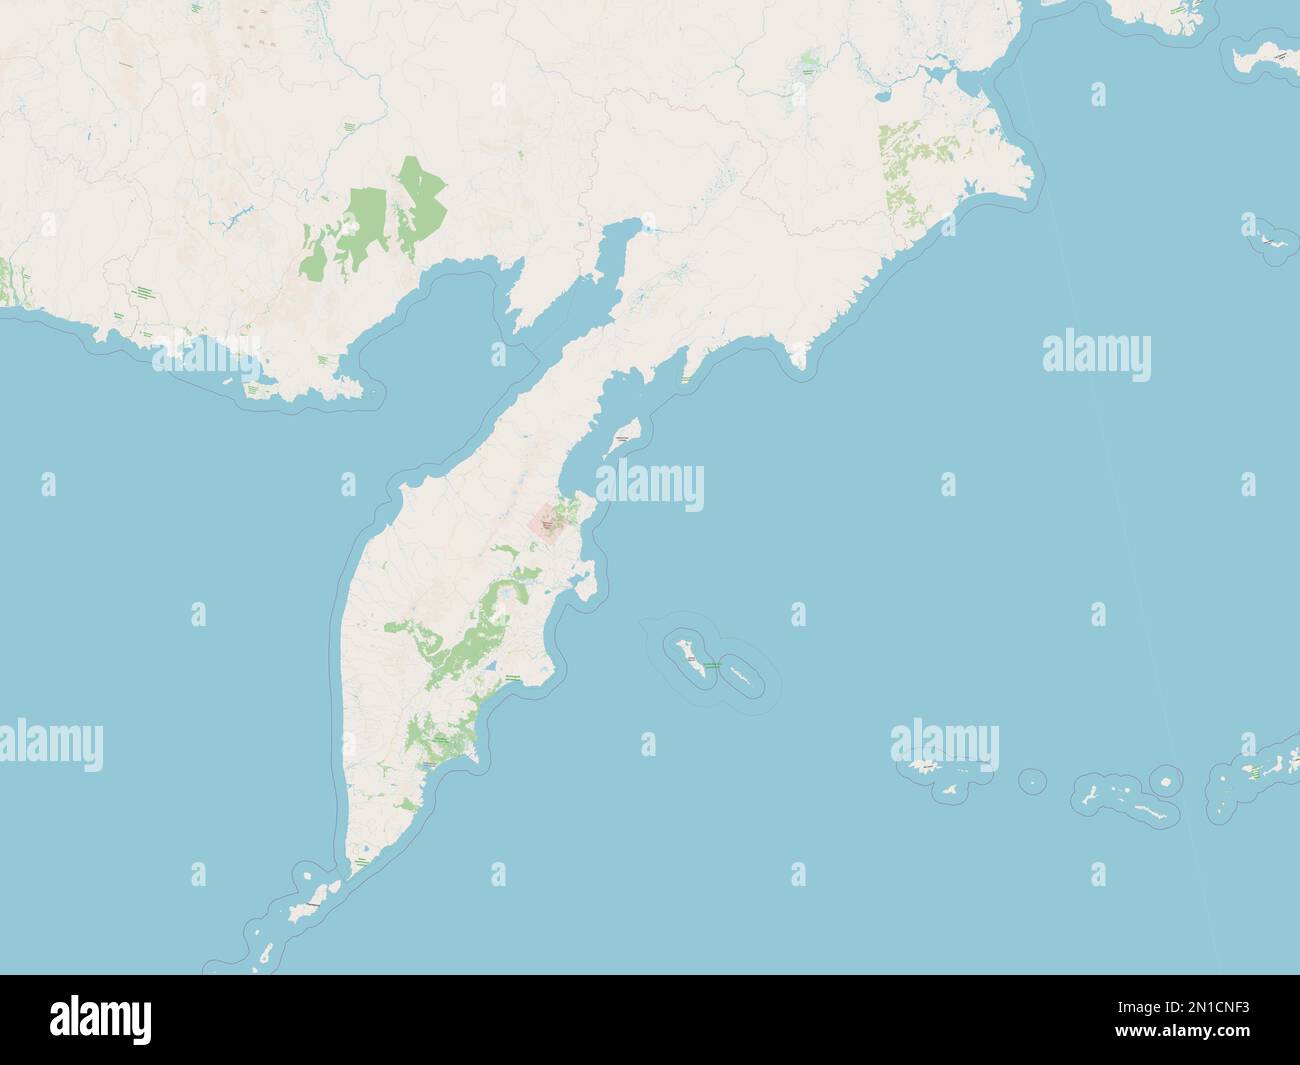 Kamchatka, territory of Russia. Open Street Map Stock Photo